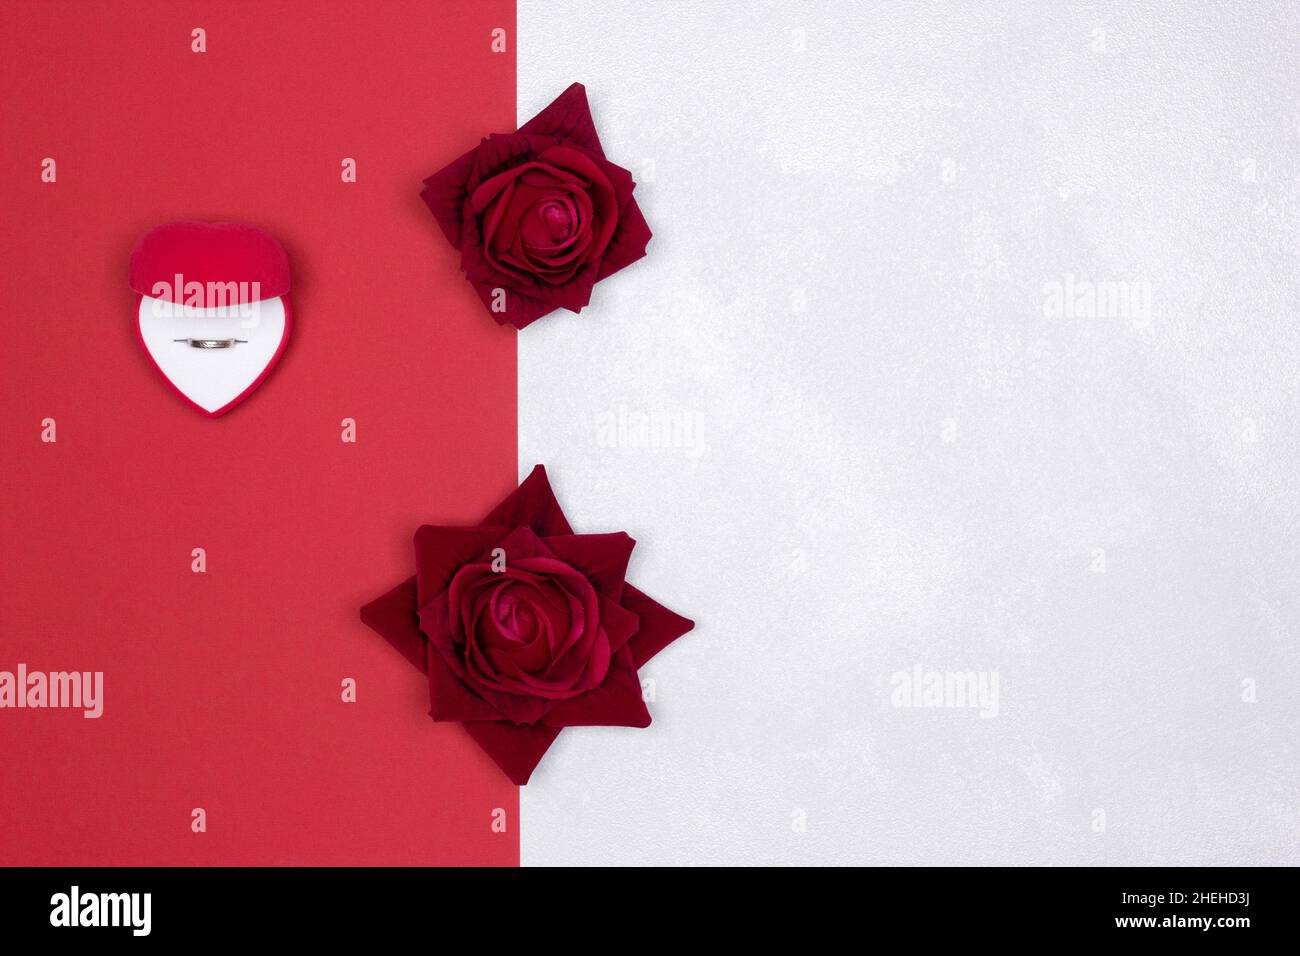 Scatola regalo a forma di cuore in velluto rosso aperto con anello di nozze all'interno e fiori di rosa su sfondo rosso e bianco argenteo testurizzato. Spazio di copia Foto Stock